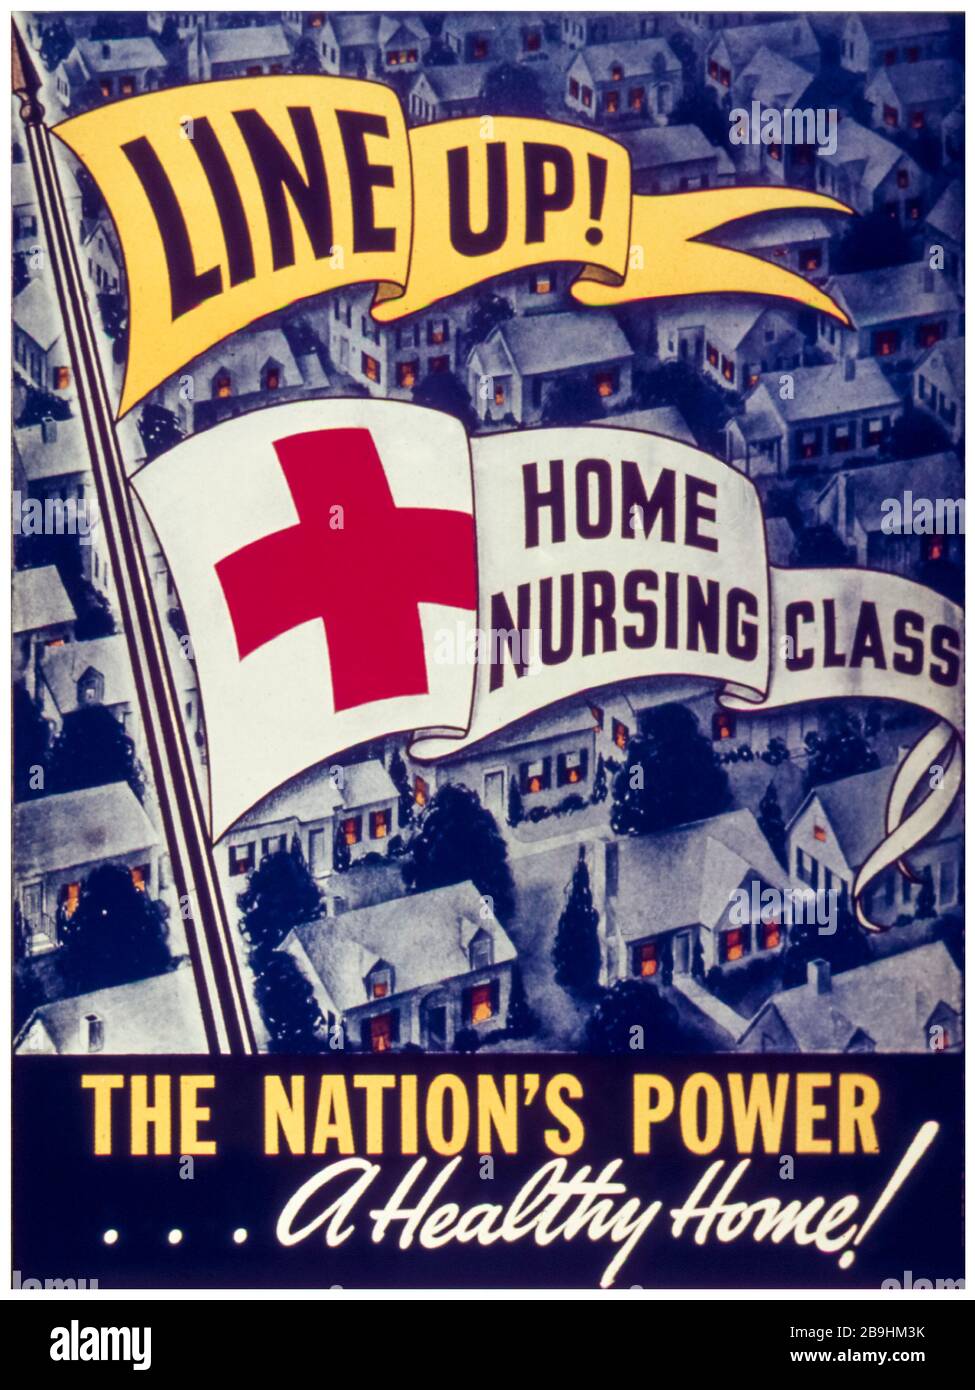 Poster della campagna della classe infermieristica domestica della seconda Guerra Mondiale americana, Line up: Classe infermieristica domestica, il potere della nazione, UNA casa sana, 1941-1945 Foto Stock